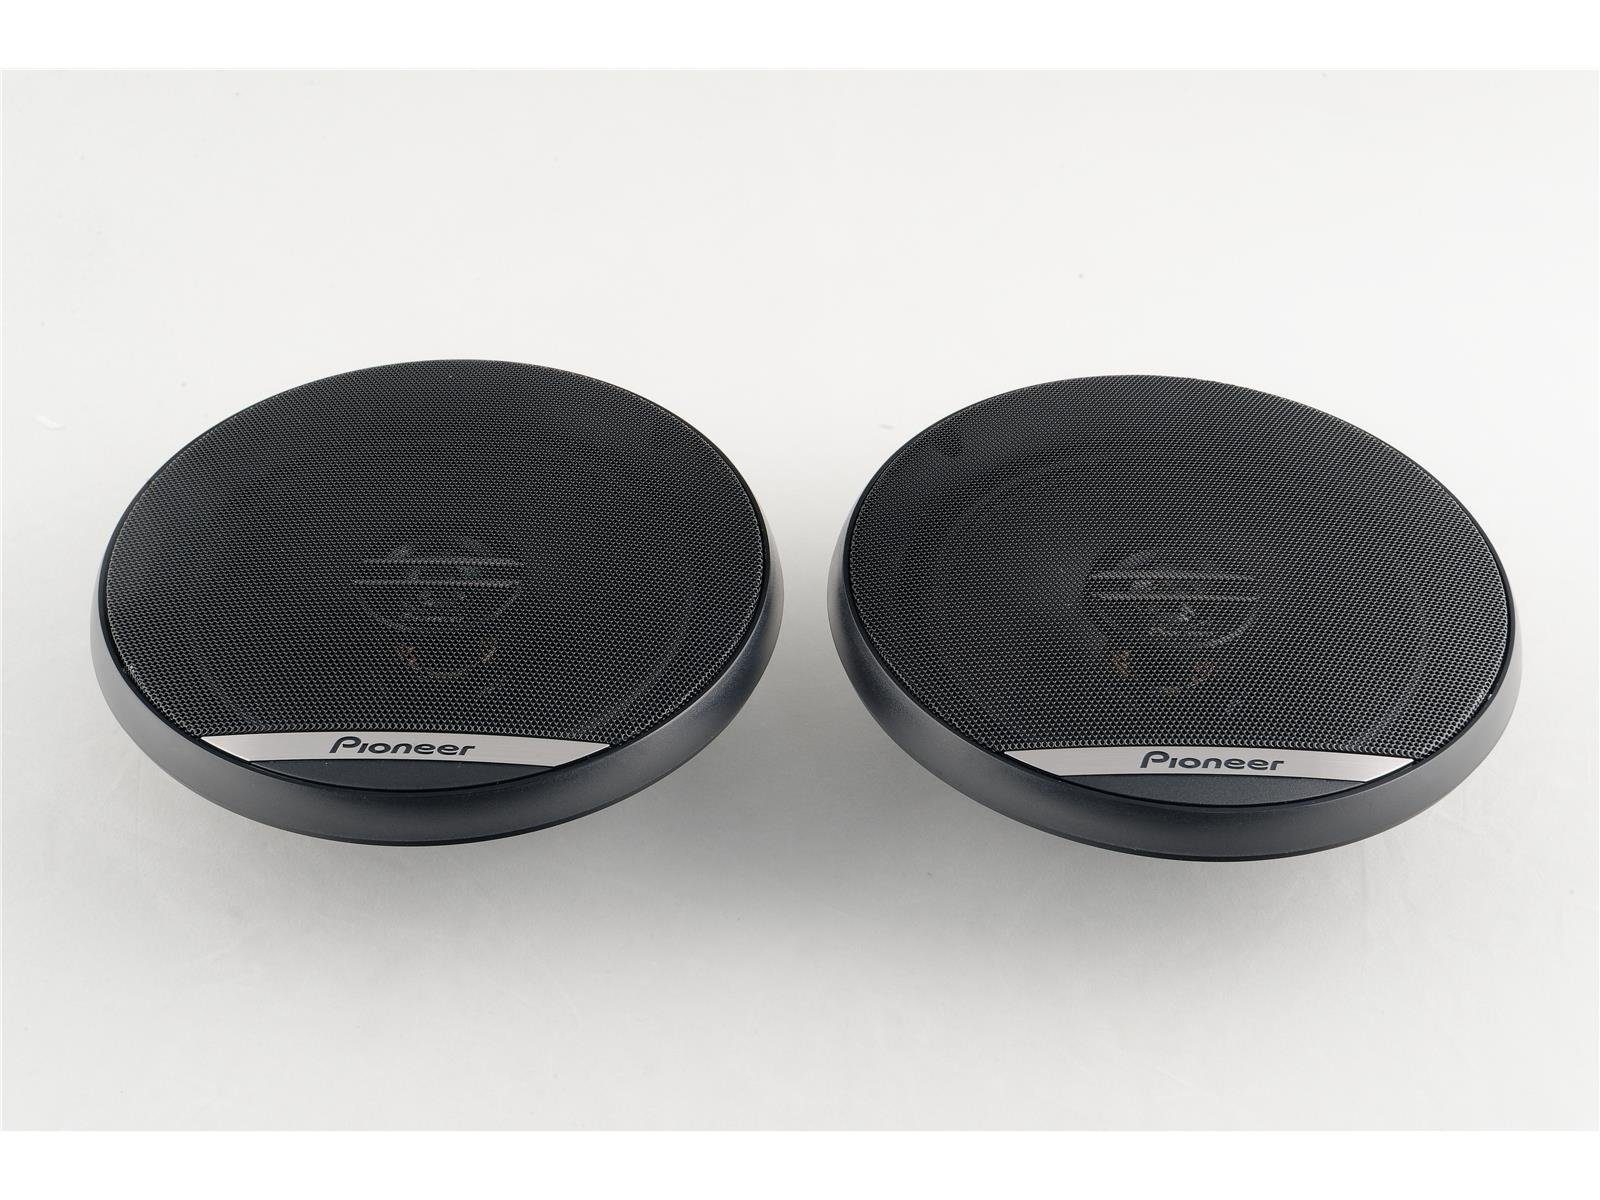 vorne Ford Auto-Lautsprecher Focus MK3 Pioneer passend für Lautsprecher Pioneer